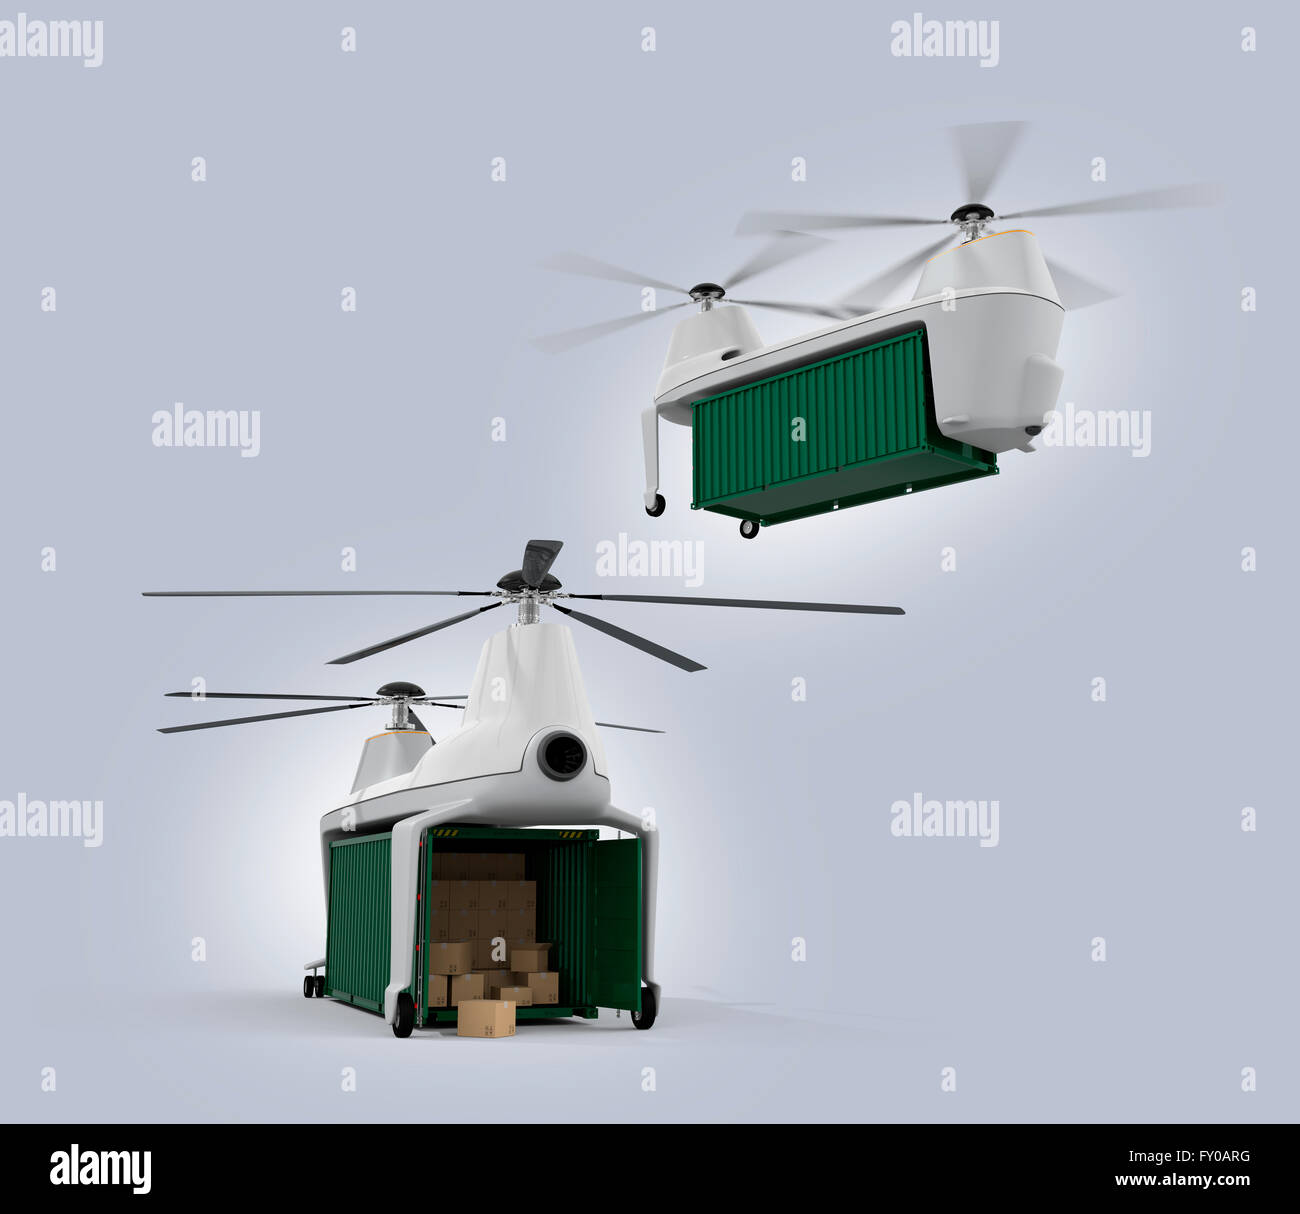 Drohnen Ladungsbehälter fliegen in den Himmel tragen. 3D-Rendering Bild Stockfoto